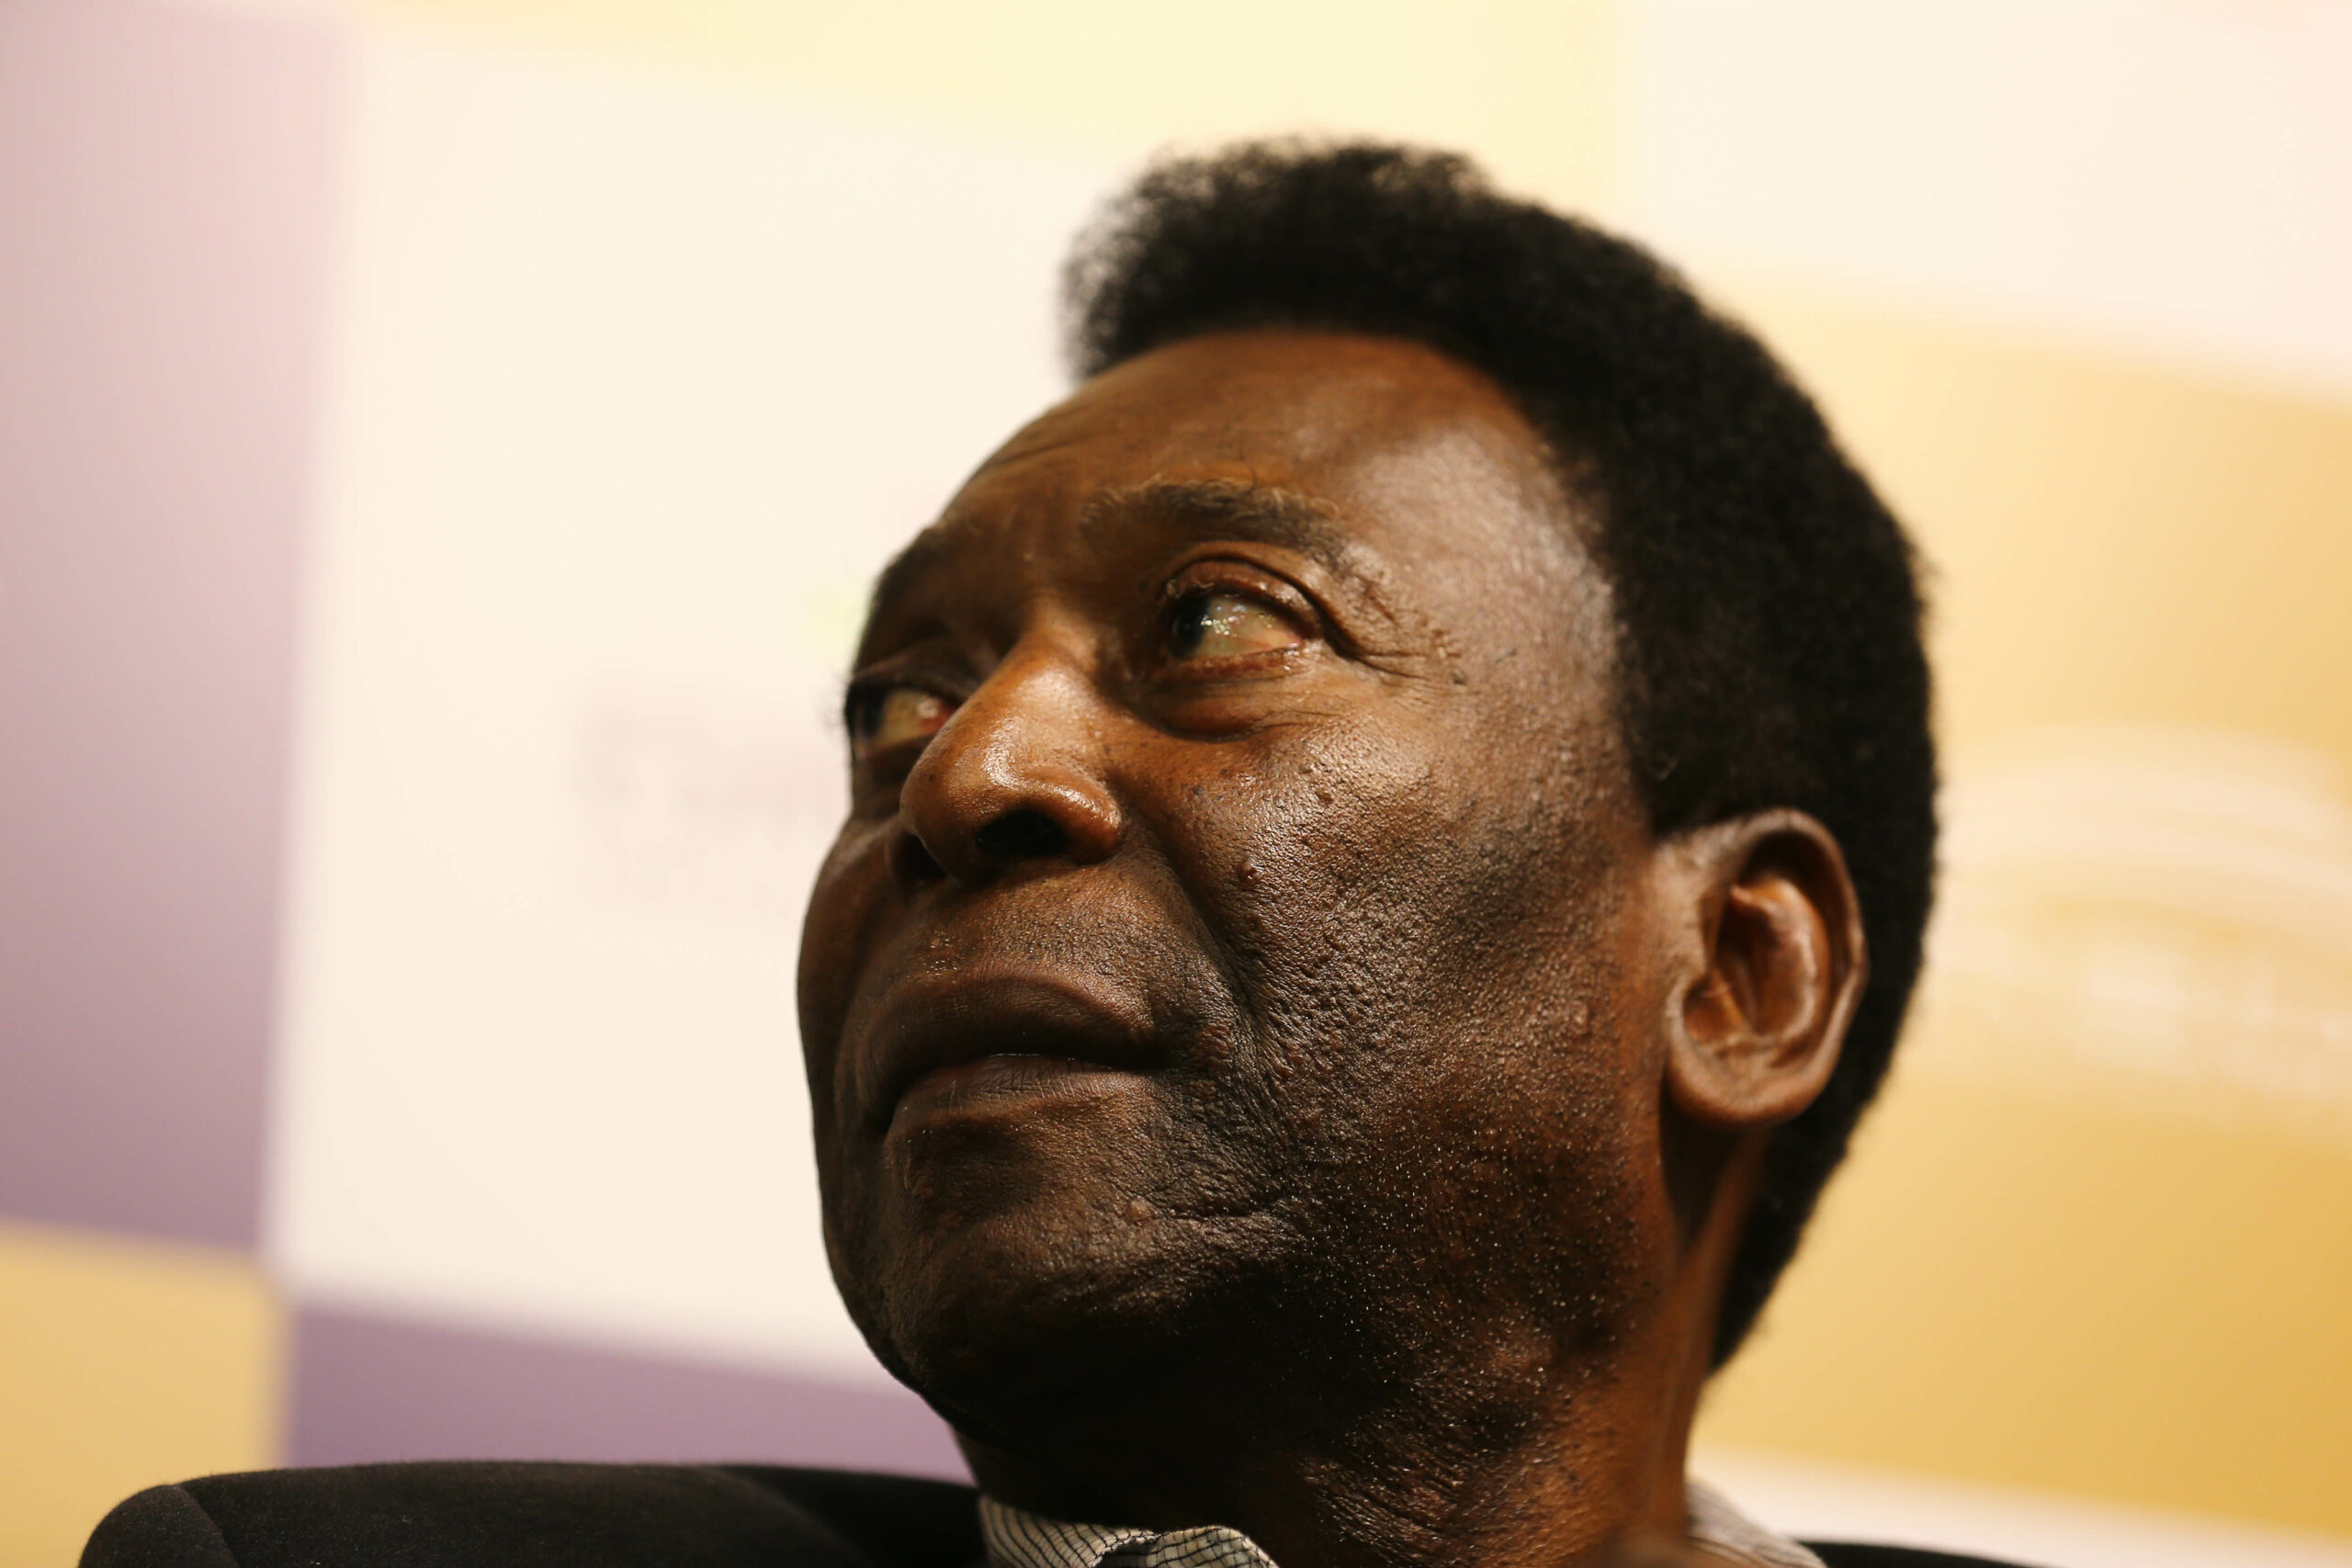 Hospice ellátásba került Pelé, felfüggesztették a kemoterápiás kezelését